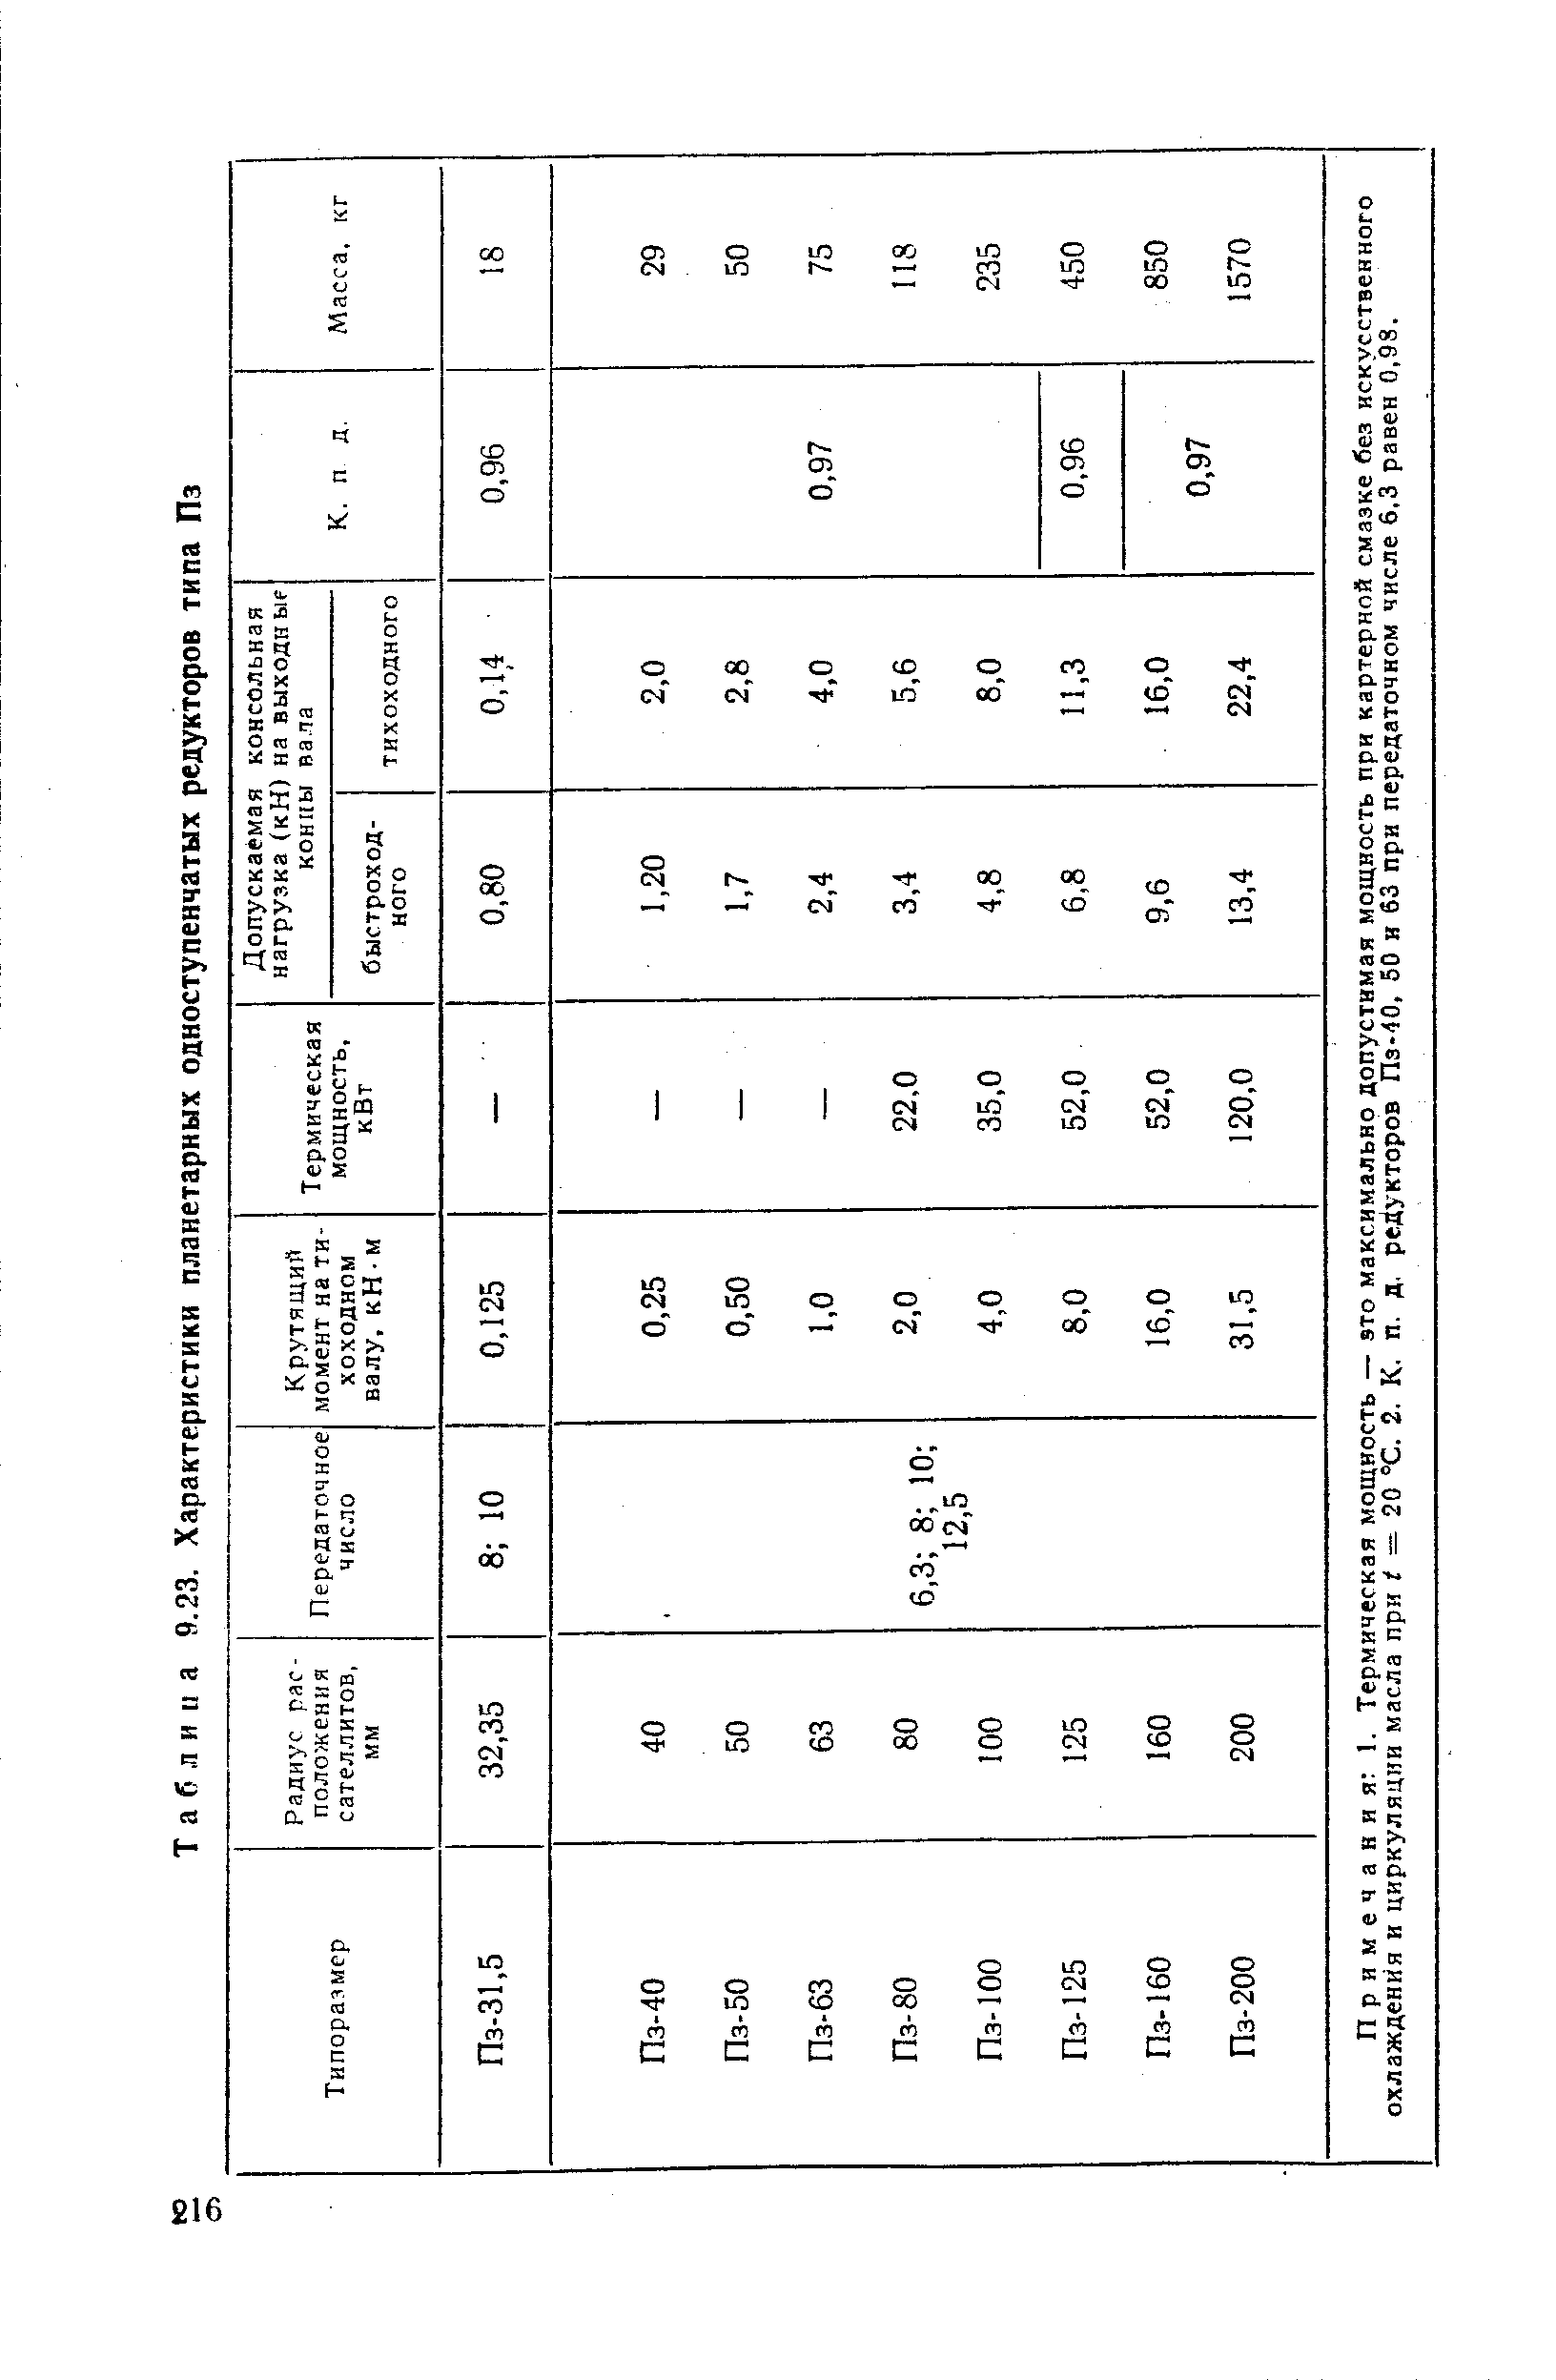 Таблица 9.23. Характеристики планетарных одноступенчатых редукторов типа Пз
